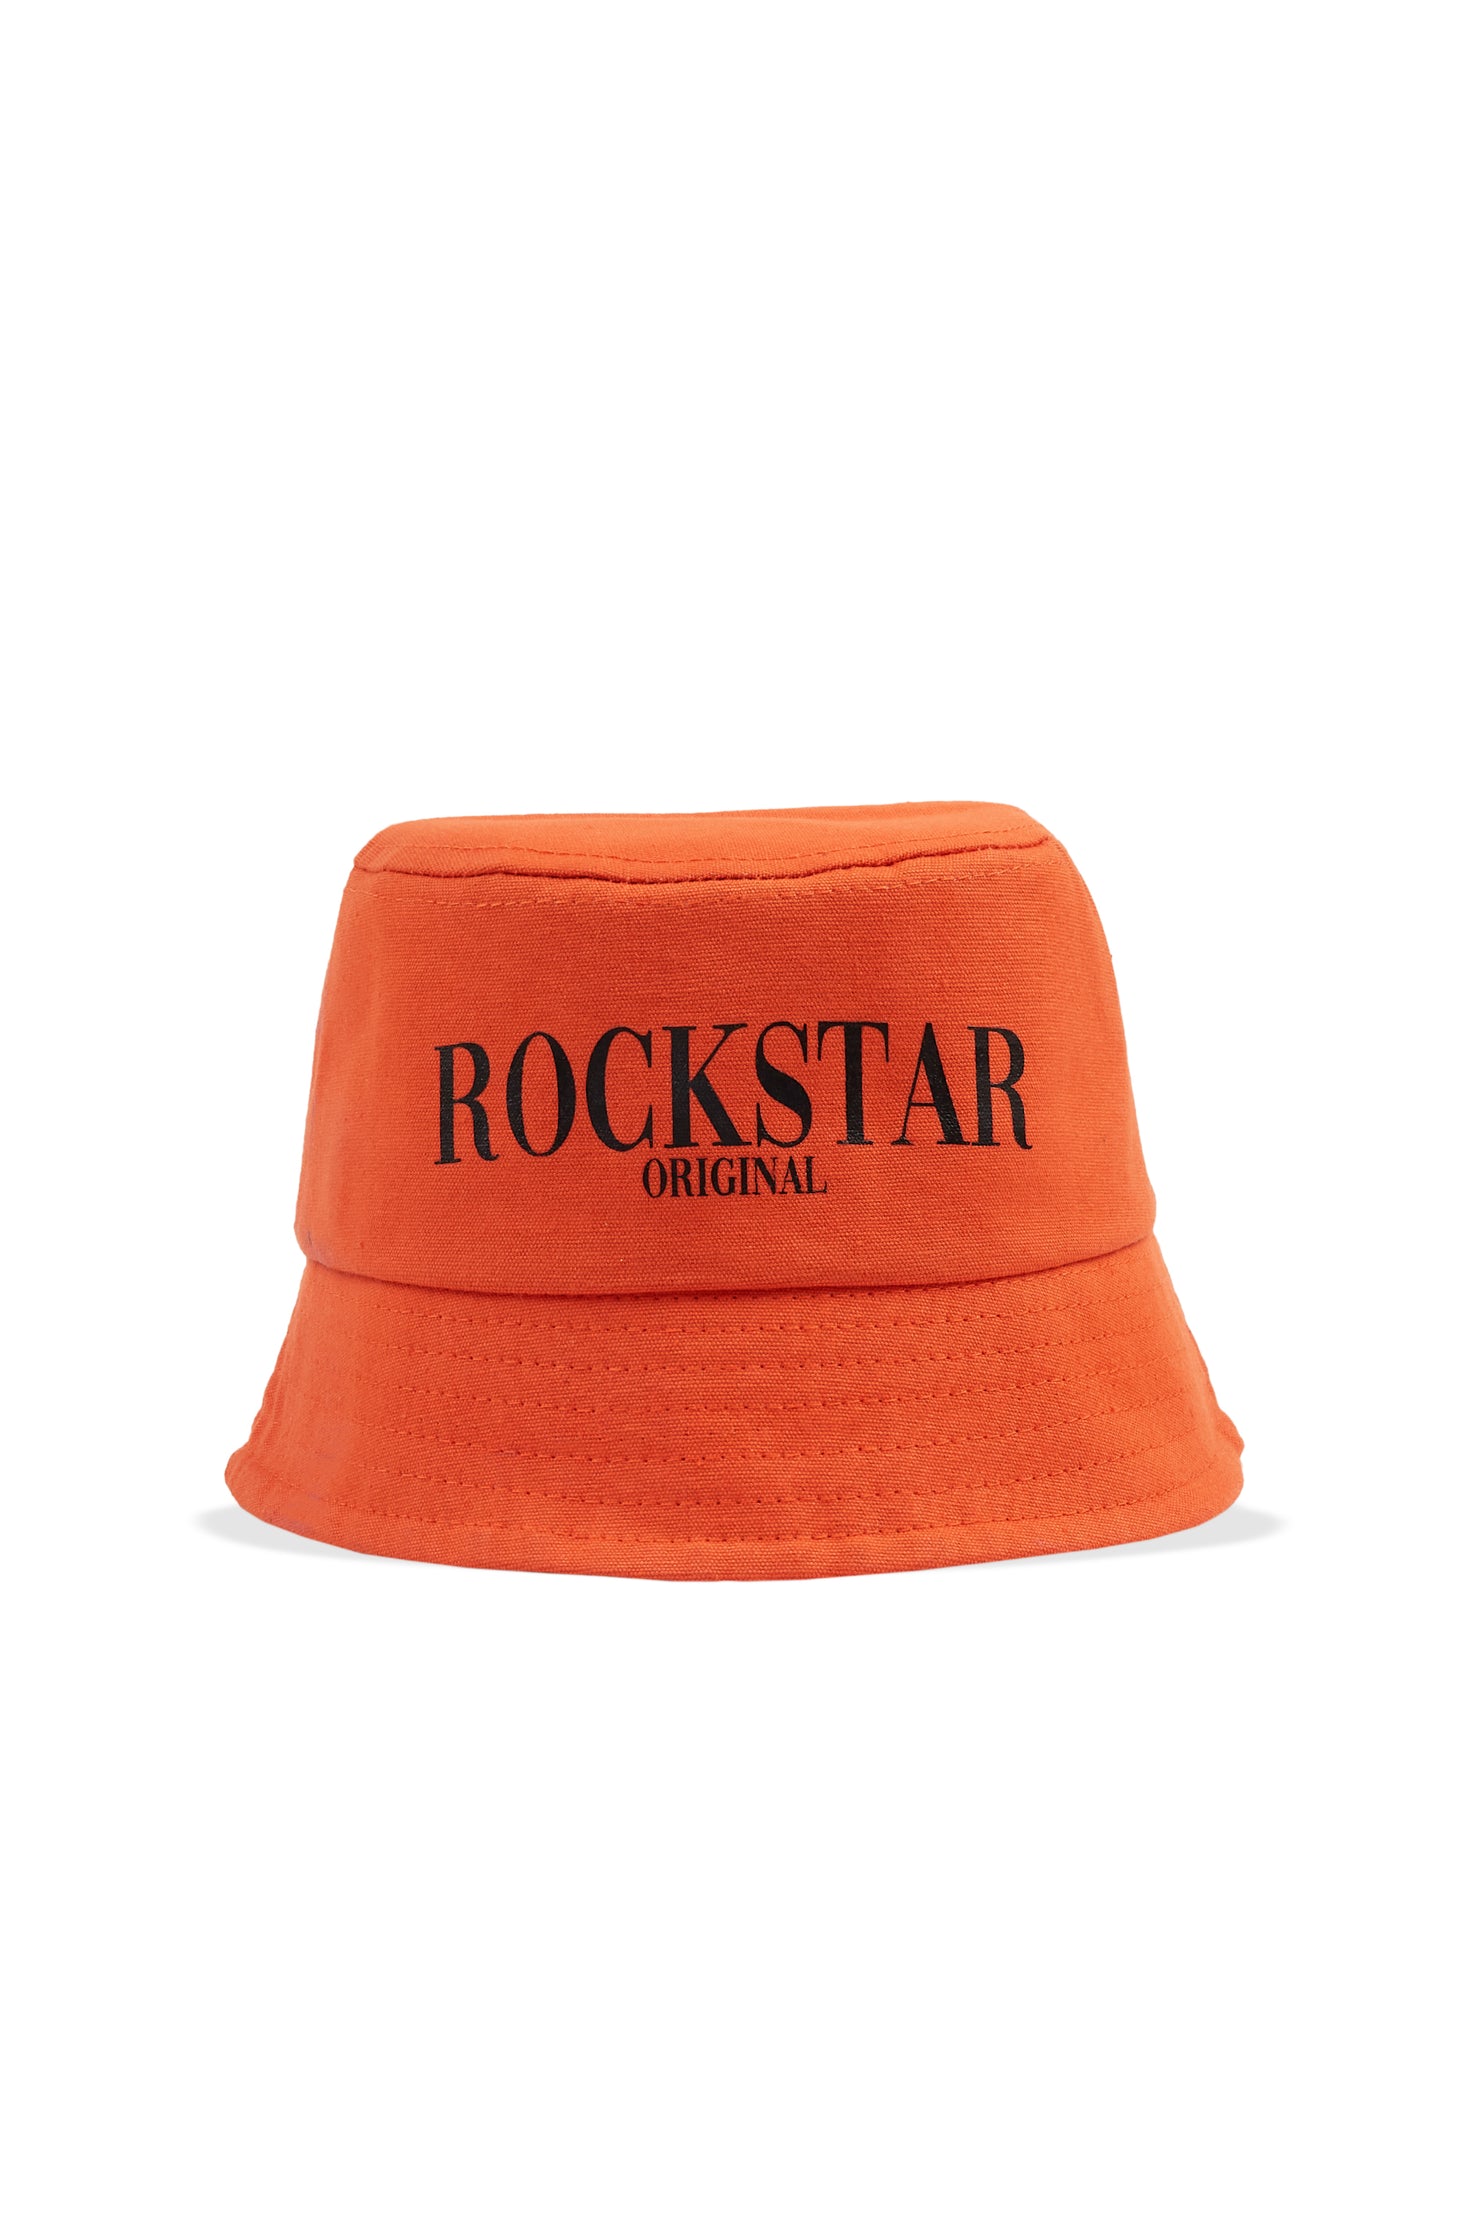 https://www.rockstaroriginal.com/cdn/shop/files/Boys-Octavio-Orange-Bucket-Hat1.jpg?v=1684962521&width=1480